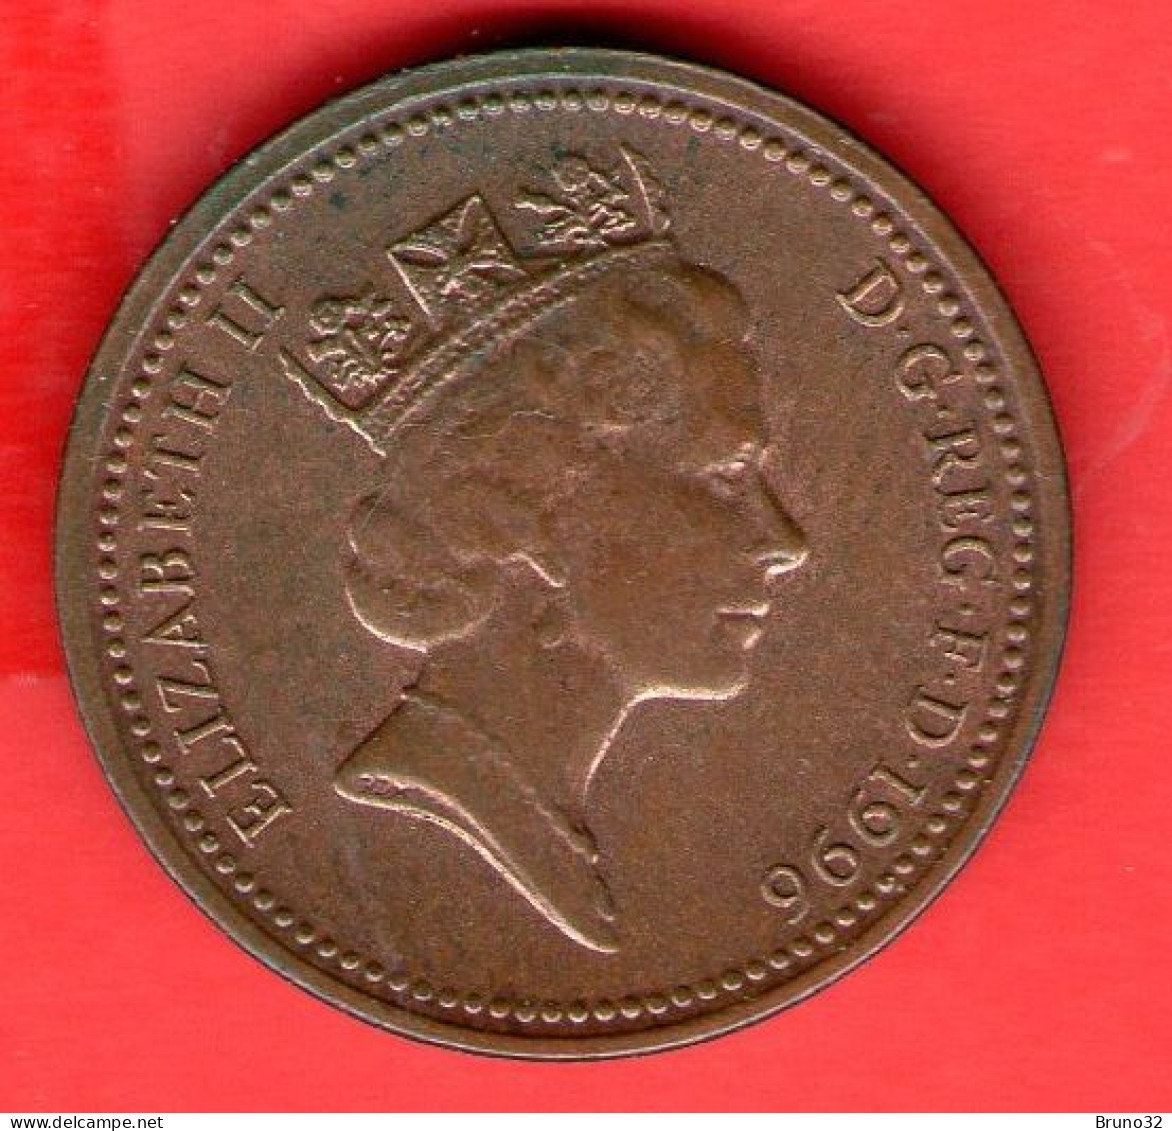 Gran Bretagna - Great Britain - GB - 1 Penny 1996 - QFDC/aUNC - Come Da Foto - 1 Penny & 1 New Penny